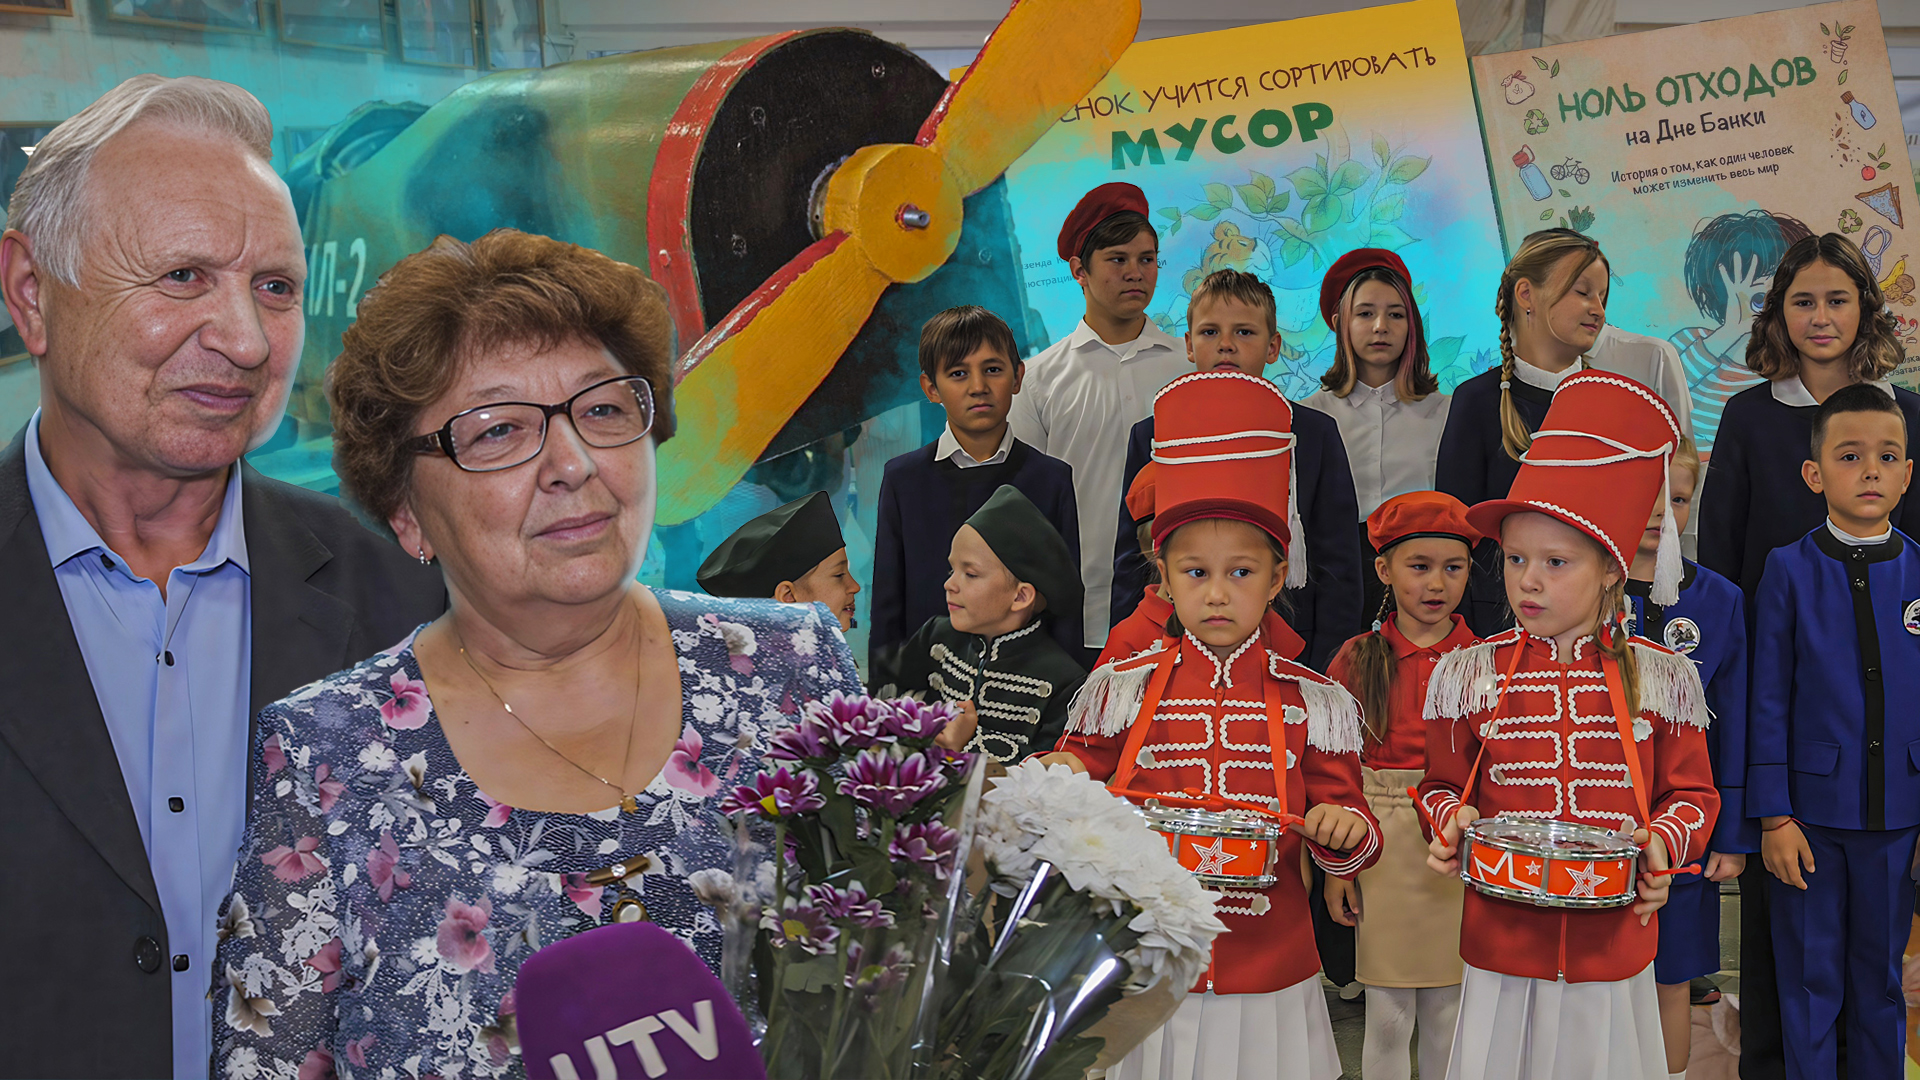 Профориентация, экология и патриотизм - чему учат в школах Башкирии?